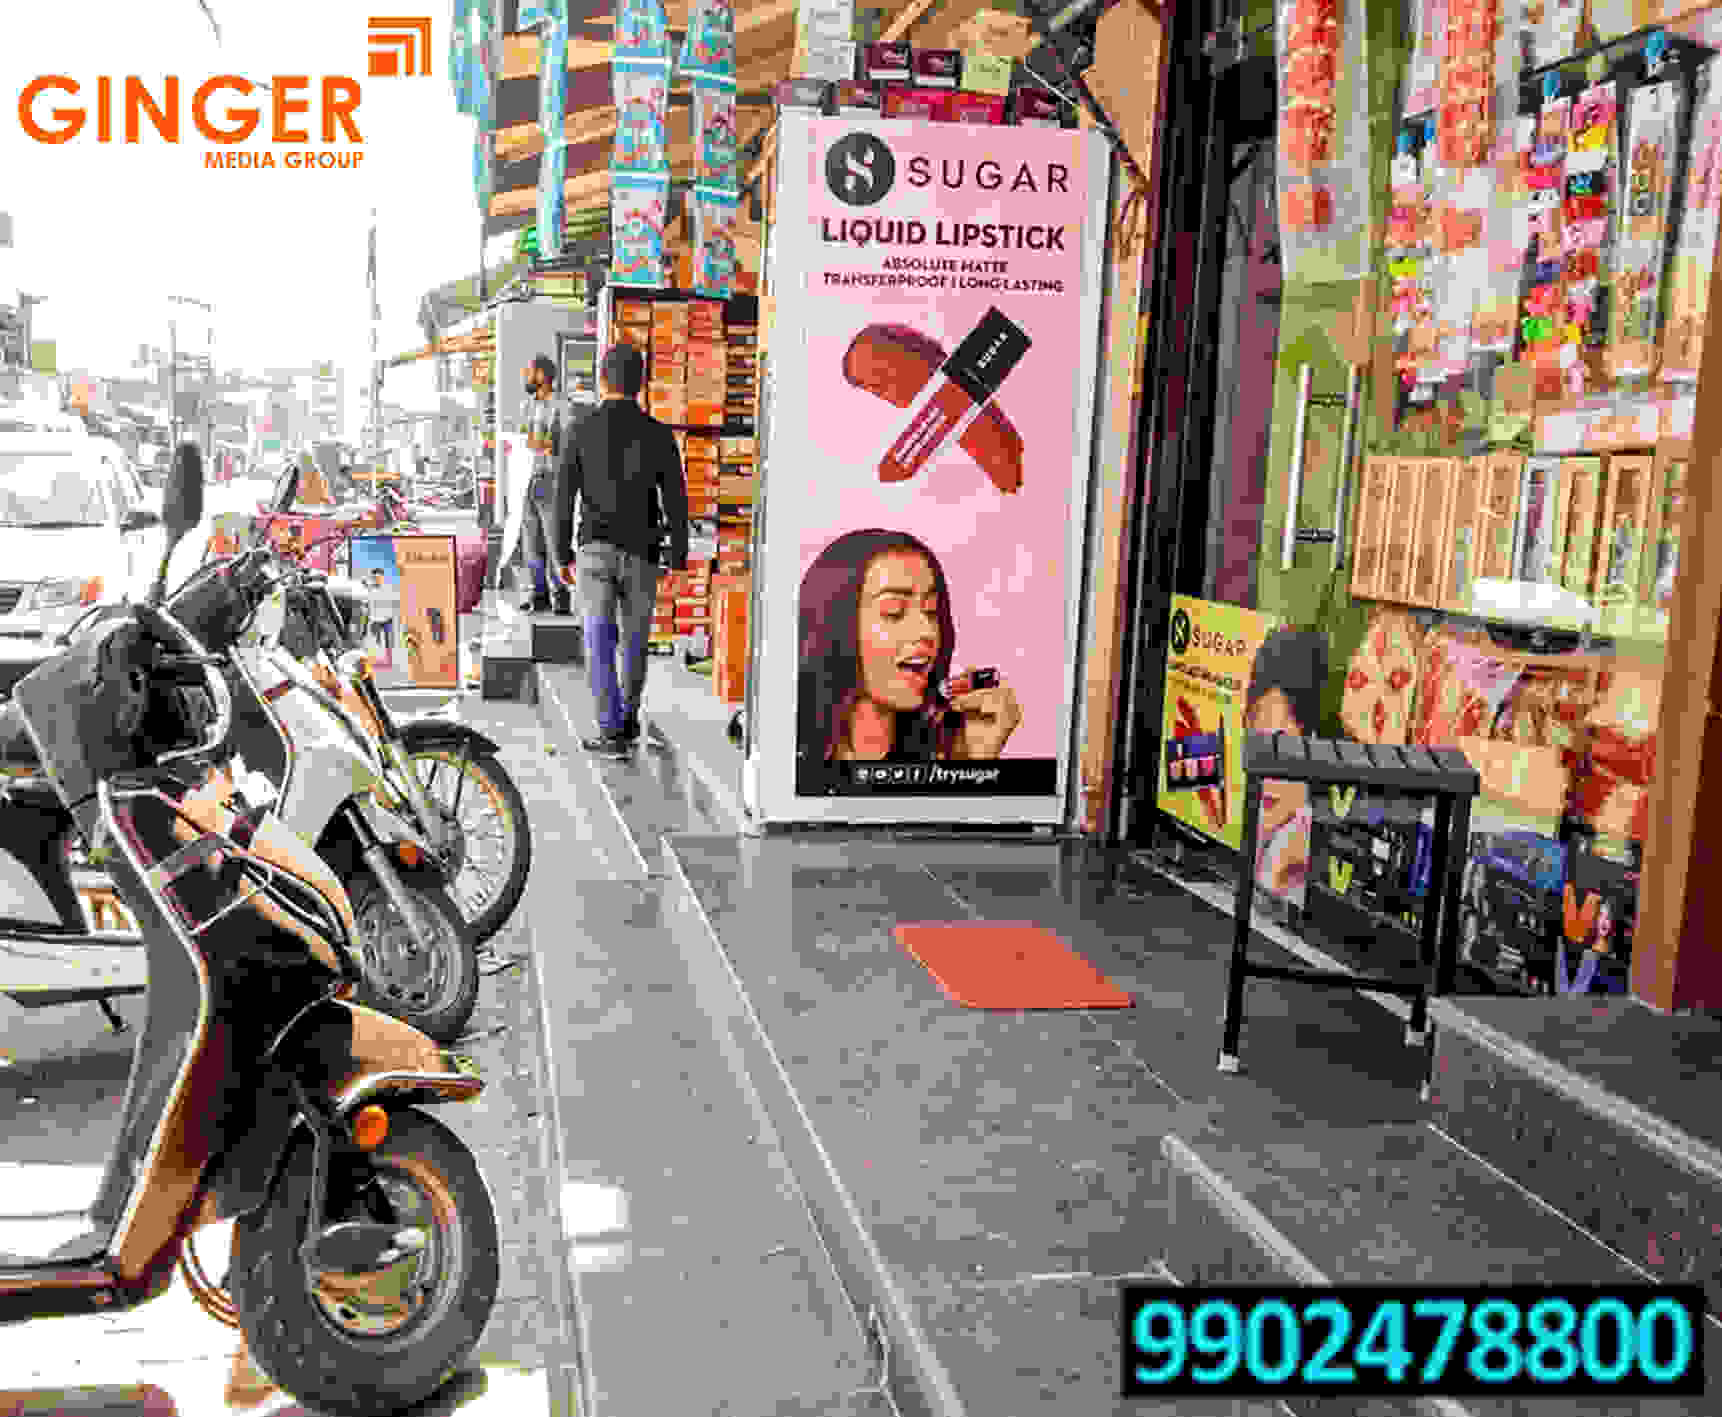 Retail Branding in India Sugar Liquid Lipstick